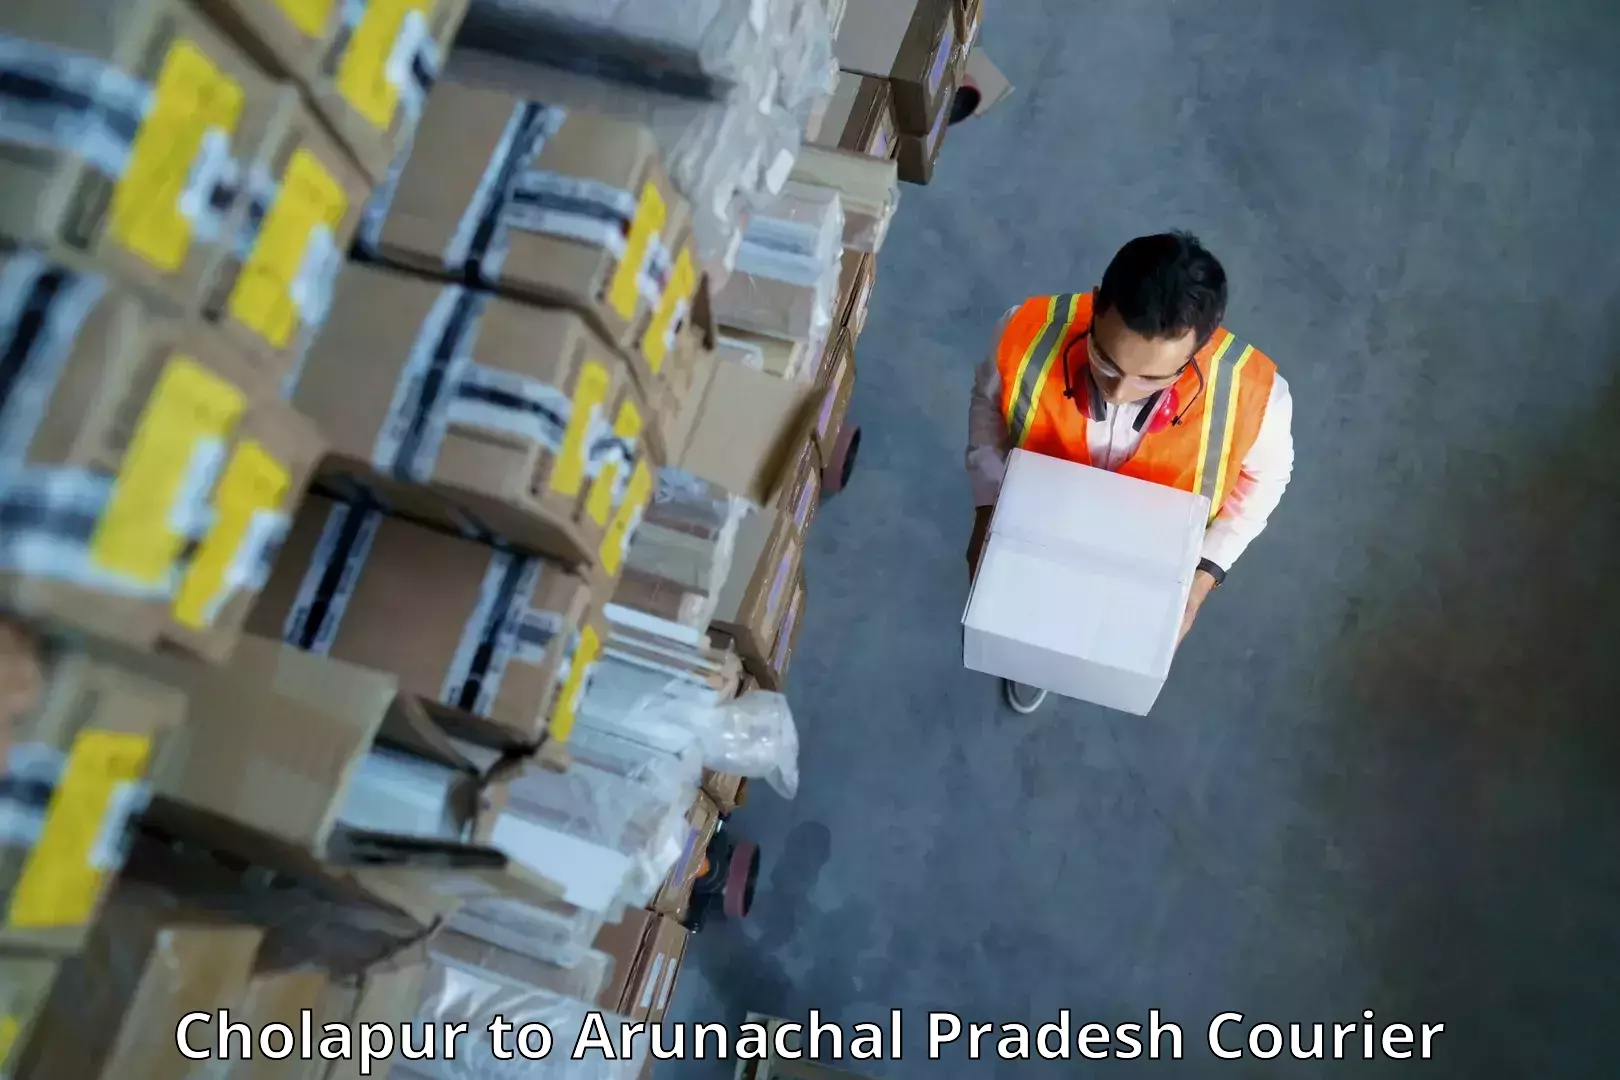 Multi-service courier options Cholapur to Arunachal Pradesh